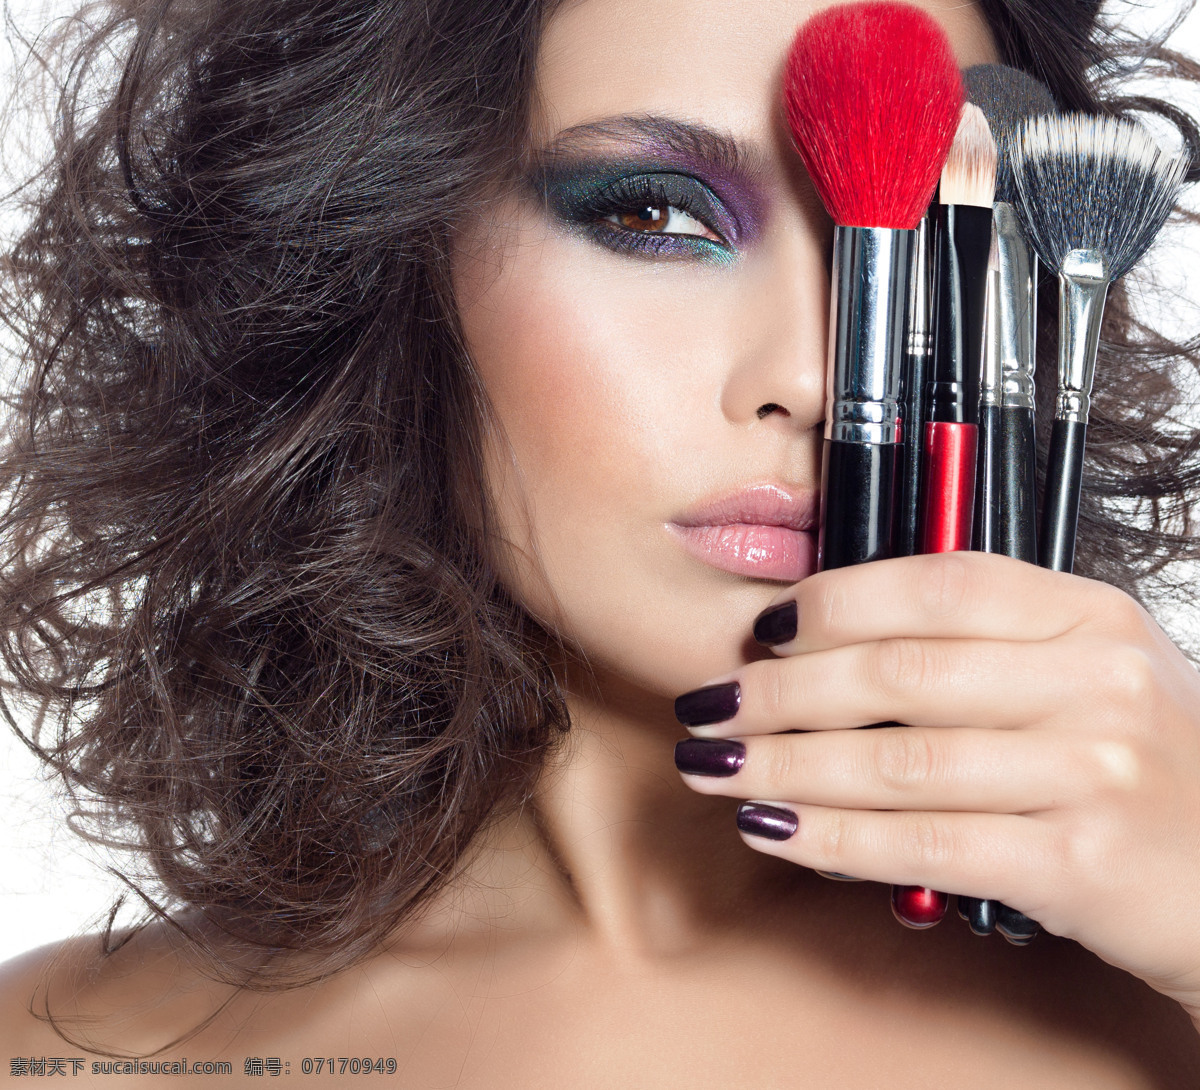 化妆笔 遮 着眼 睛 美女图片 化妆 化妆造型 性感美女 美女模特 美女写真 人物图片